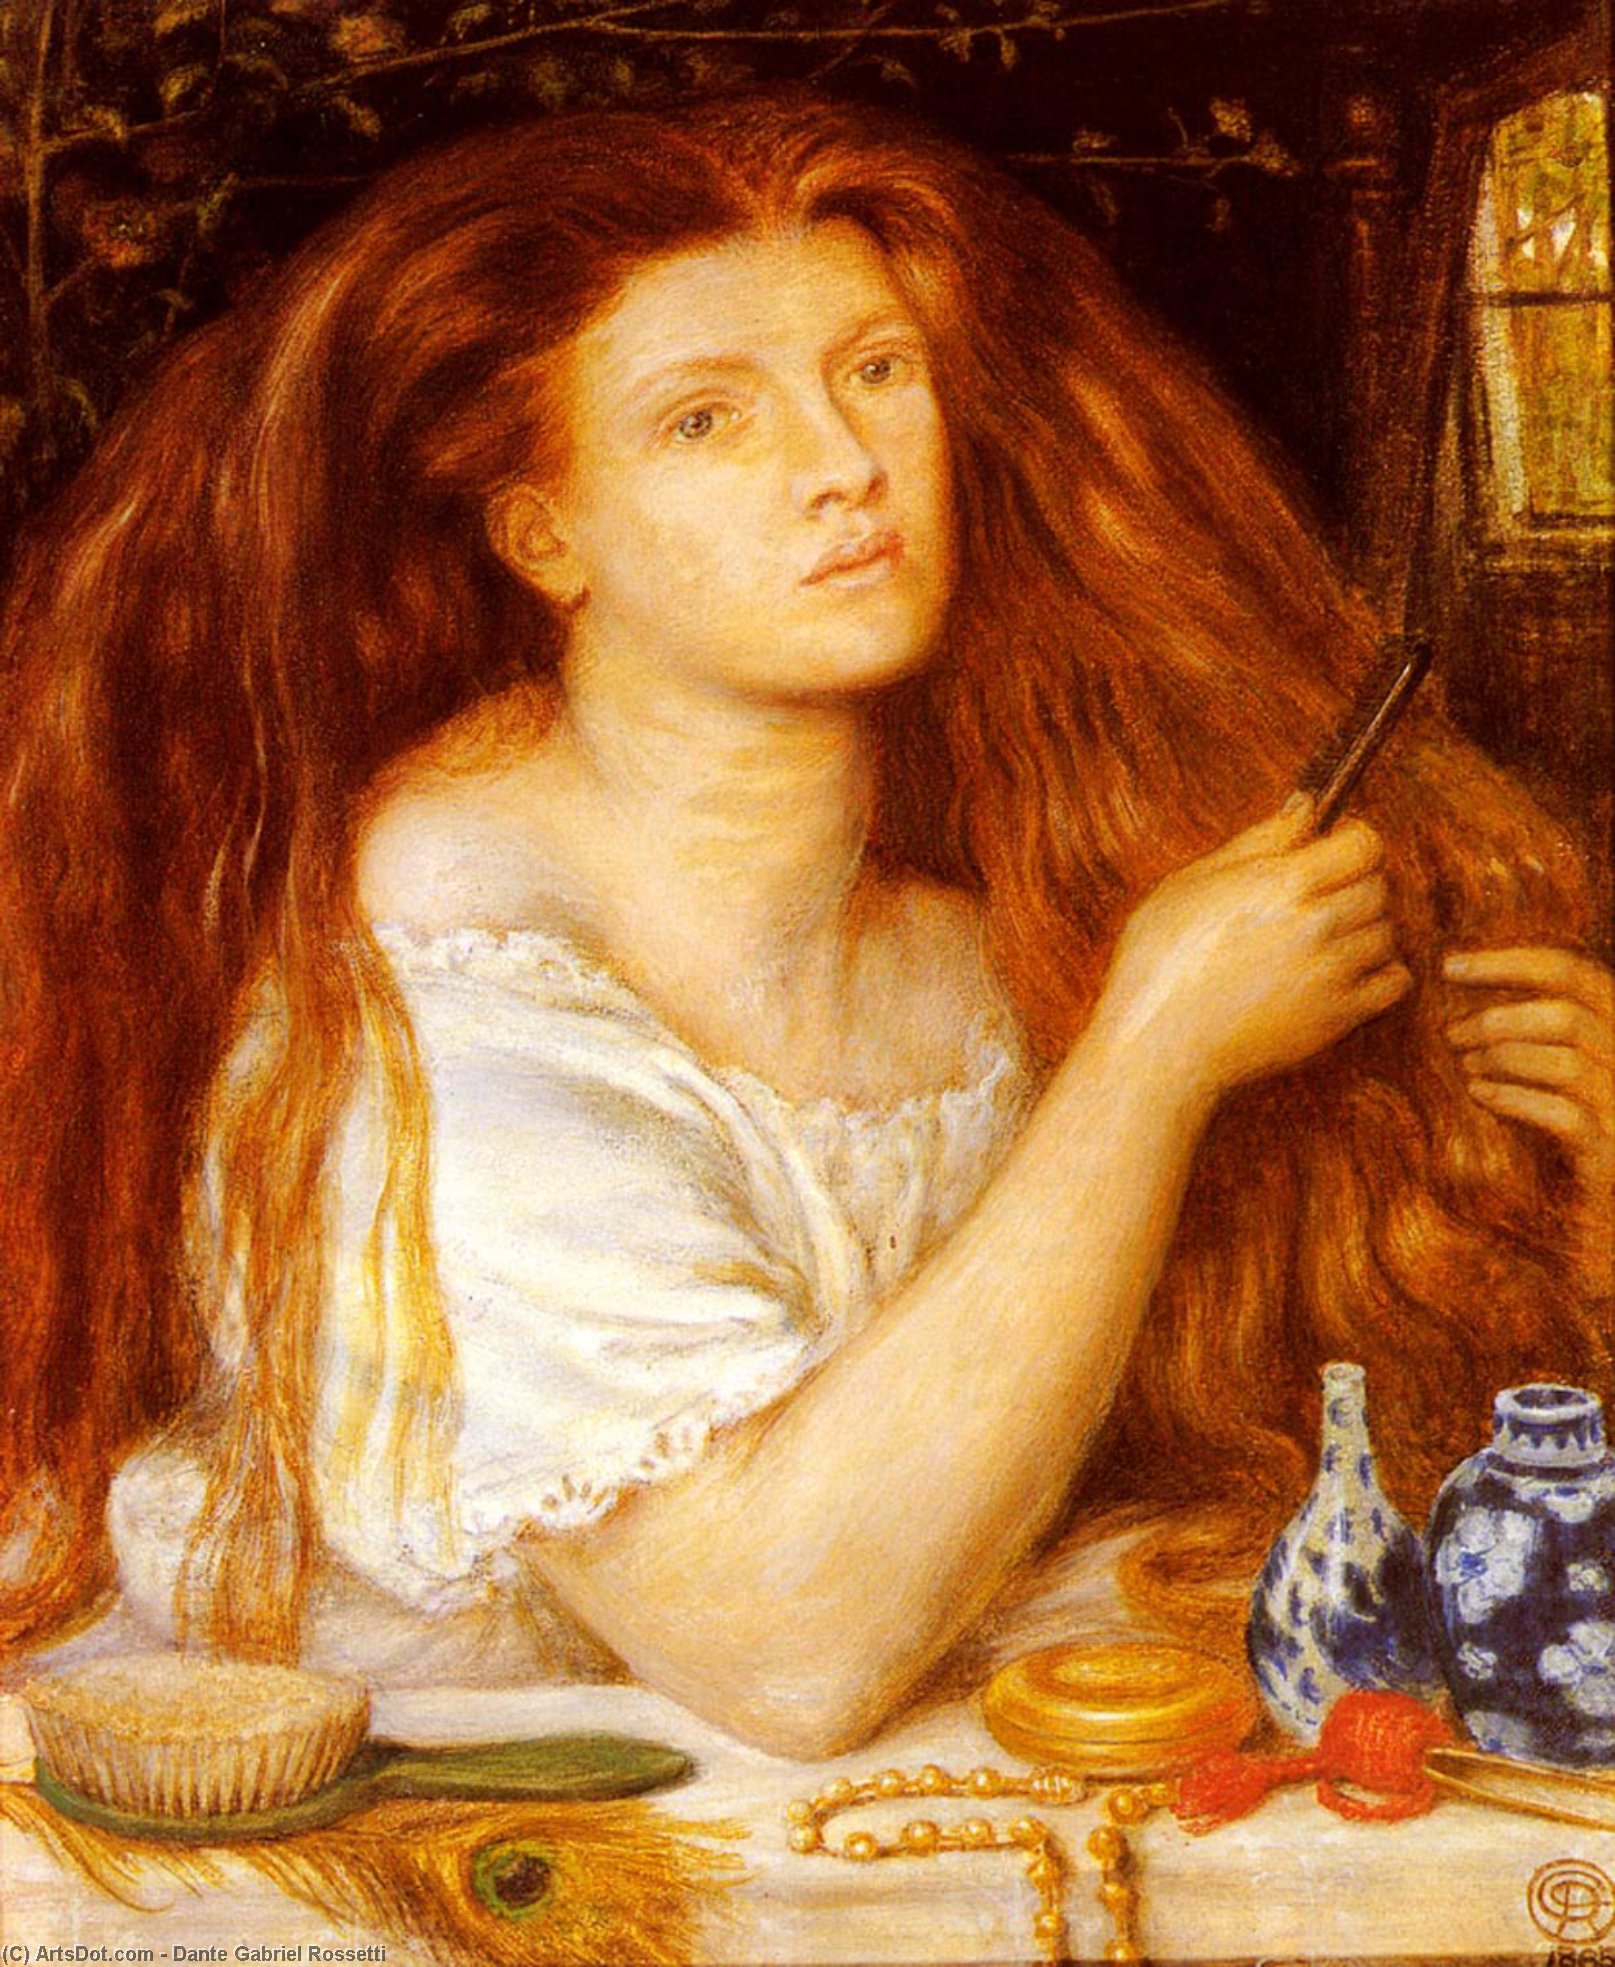 WikiOO.org - אנציקלופדיה לאמנויות יפות - ציור, יצירות אמנות Dante Gabriel Rossetti - Woman Combing Her Hair